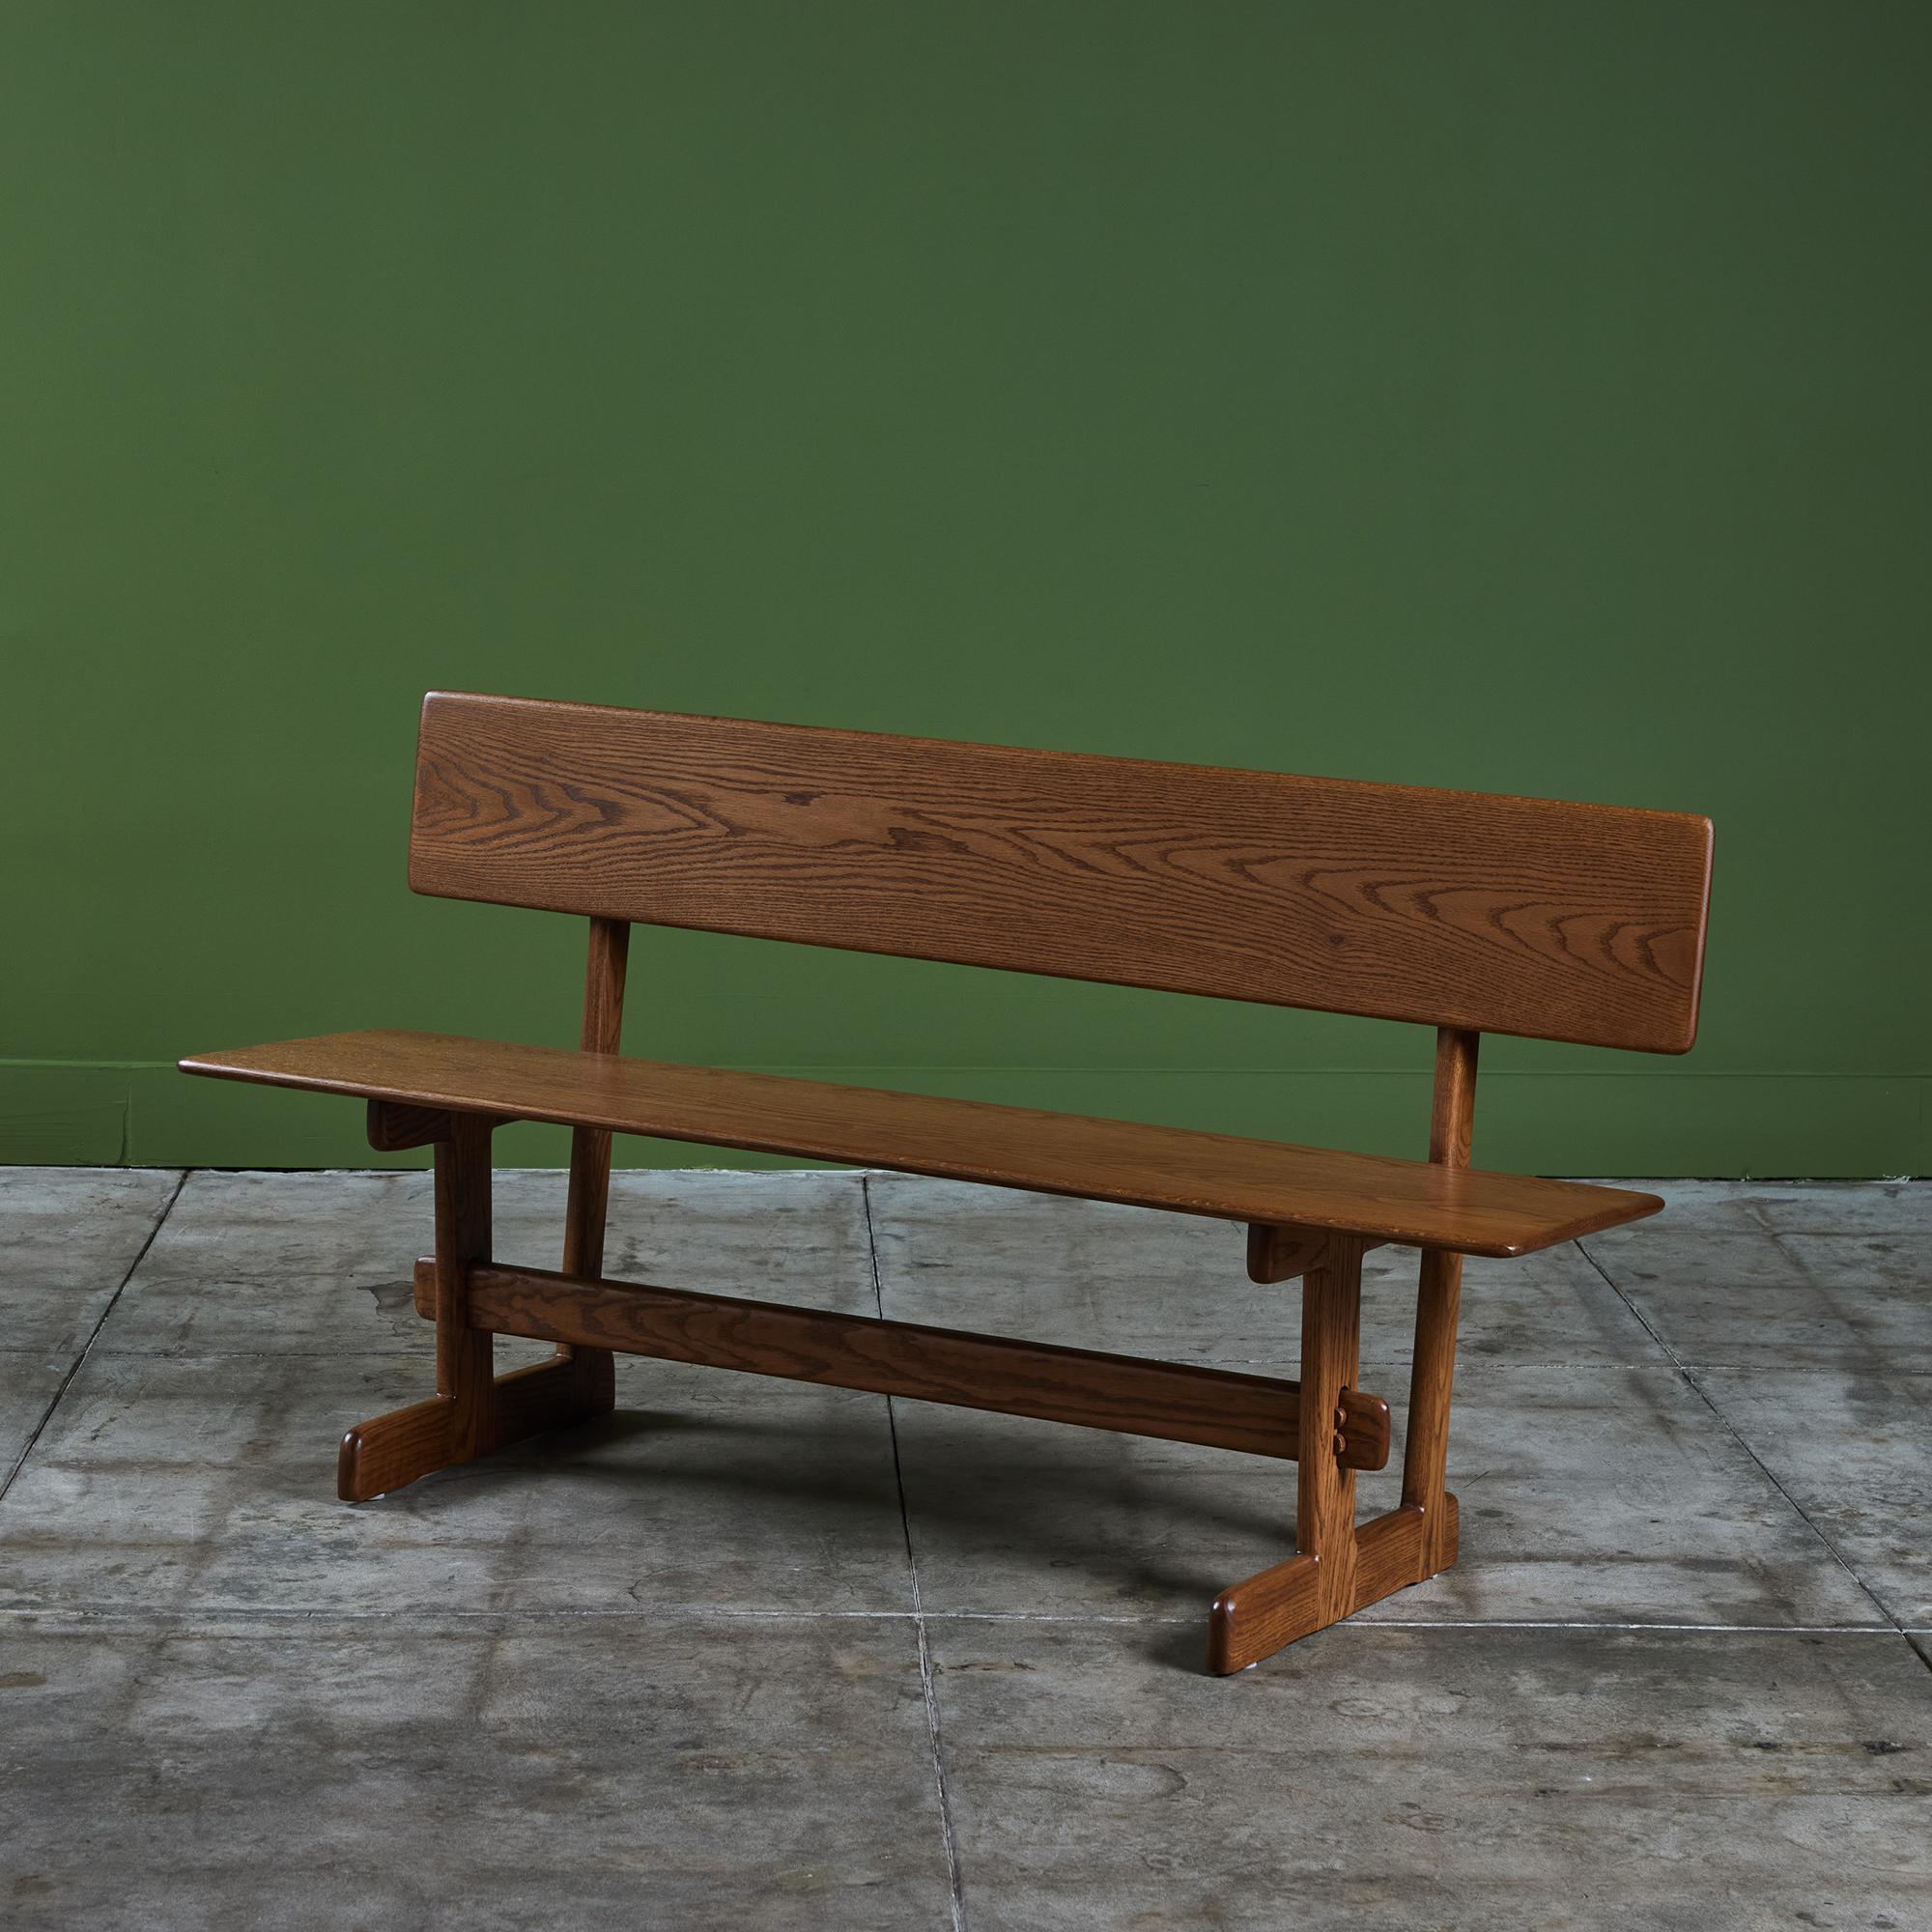 Eichenholzbank des amerikanischen Designers Gerald McCabe für Eon Furniture, ca. 1970er Jahre. Die Bank aus Massivholz hat eine lange Sitzfläche mit Rückenlehne und eignet sich perfekt für einen Esstisch, das Wohnzimmer oder den Eingangsbereich.